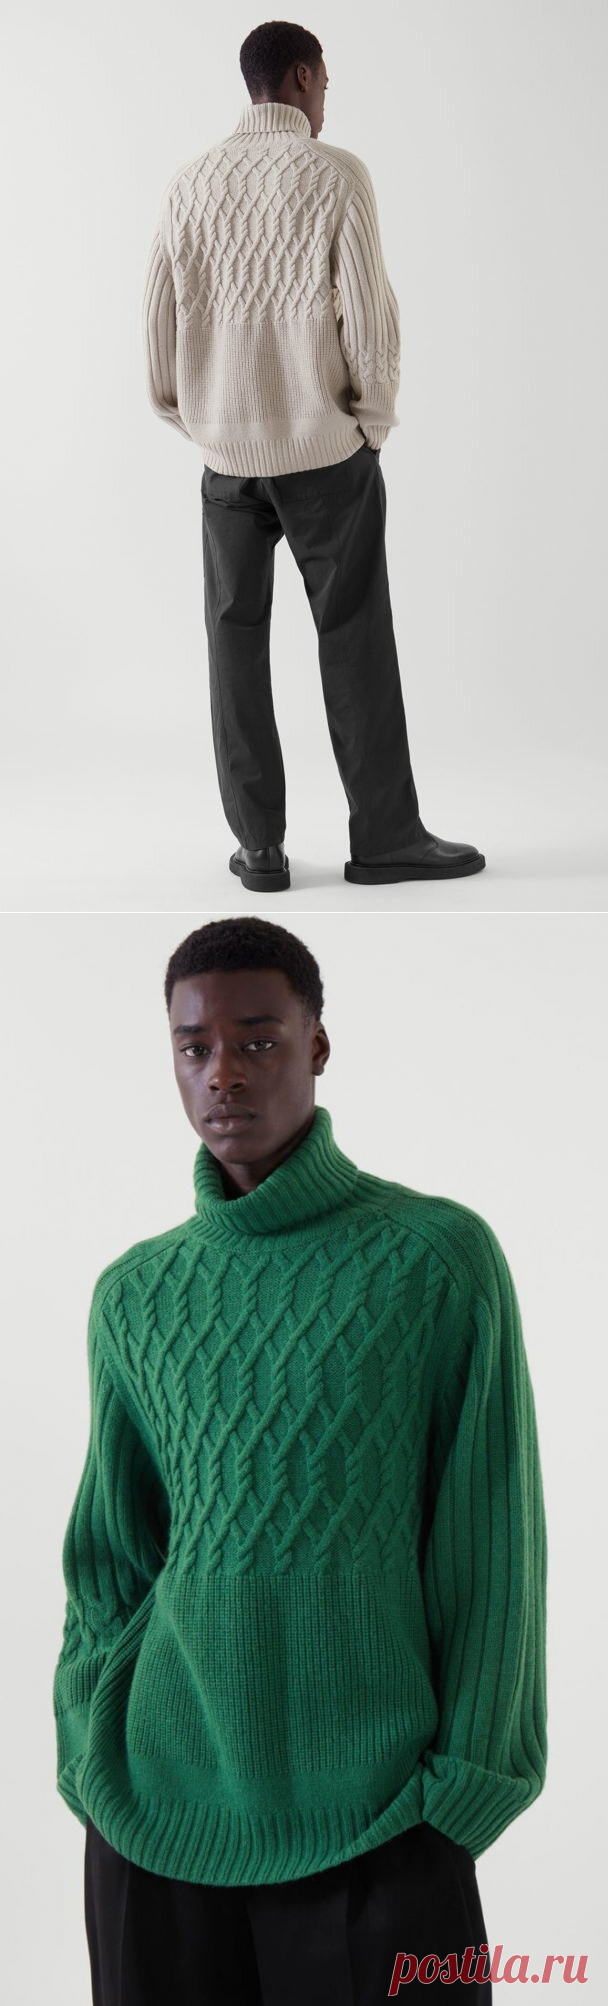 Яркий и динамичный свитер